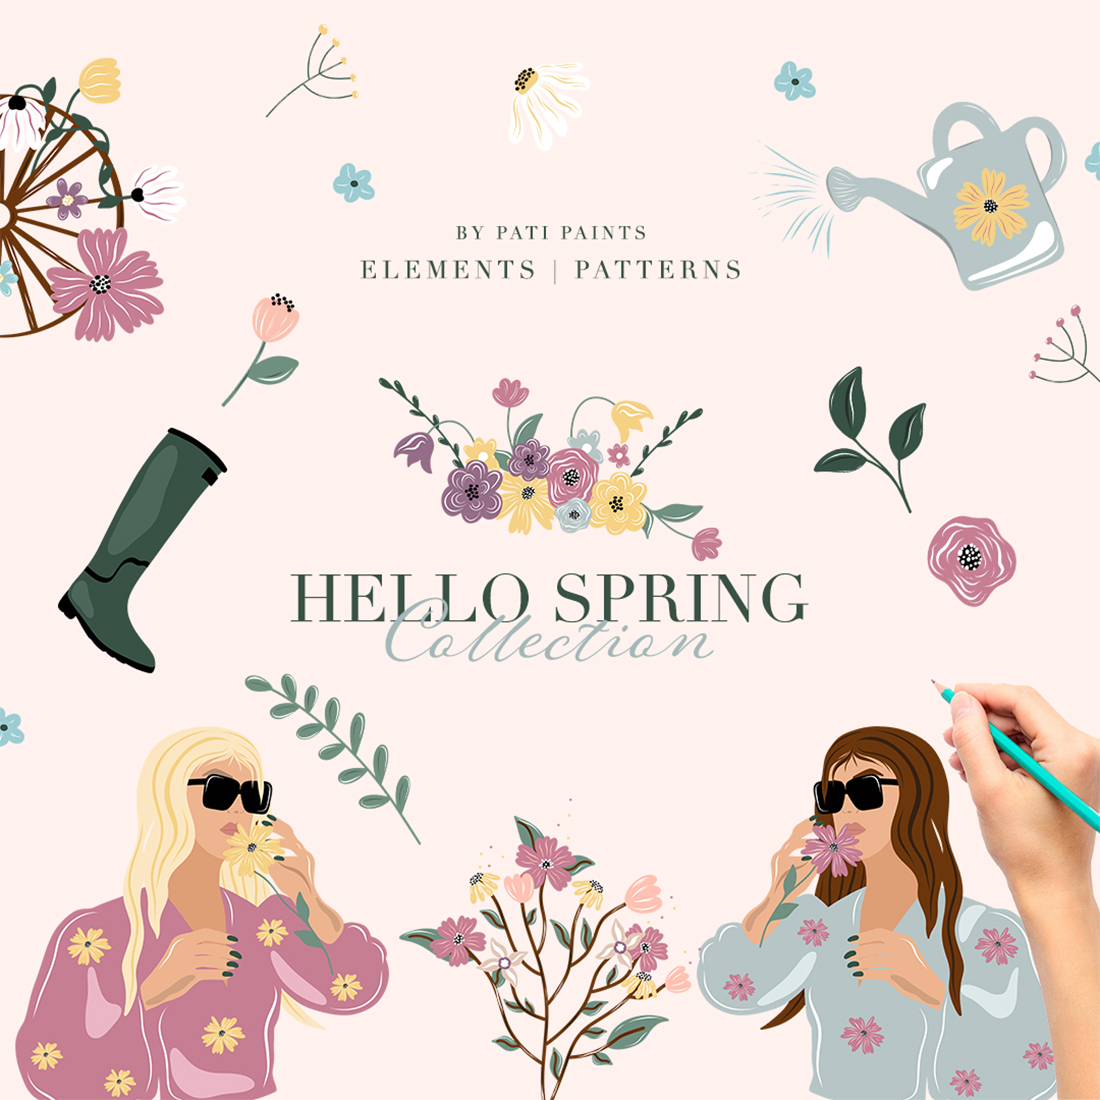 Hello Spring Collection description